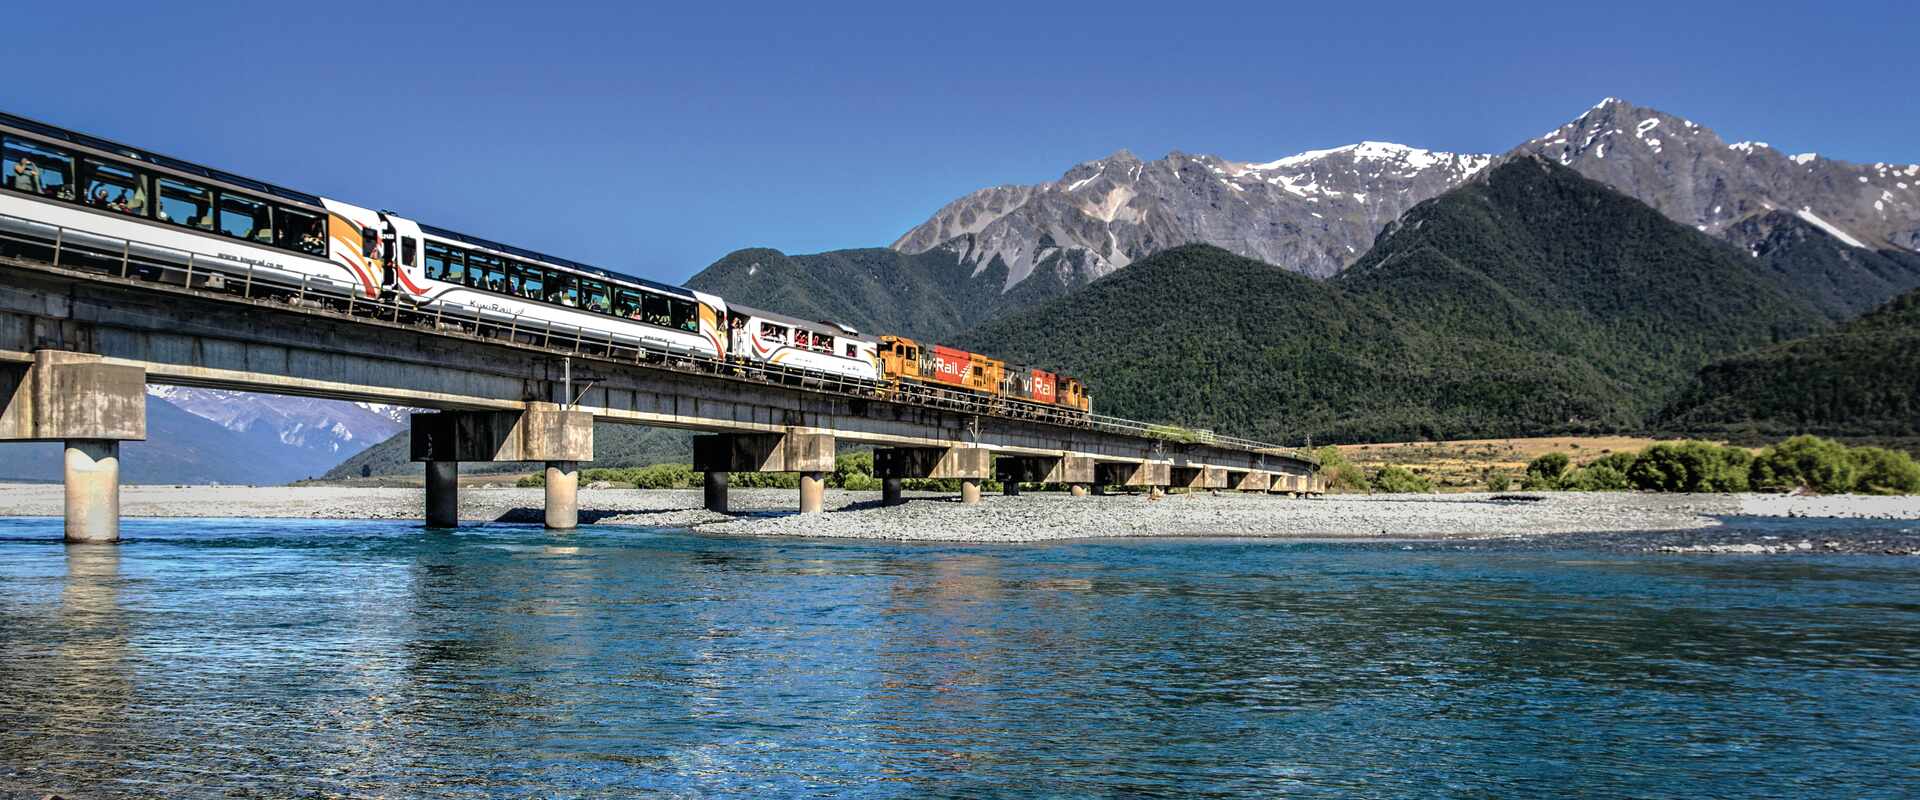 View of Tranzalpine Train on Waimakariri Bridge, New Zealand